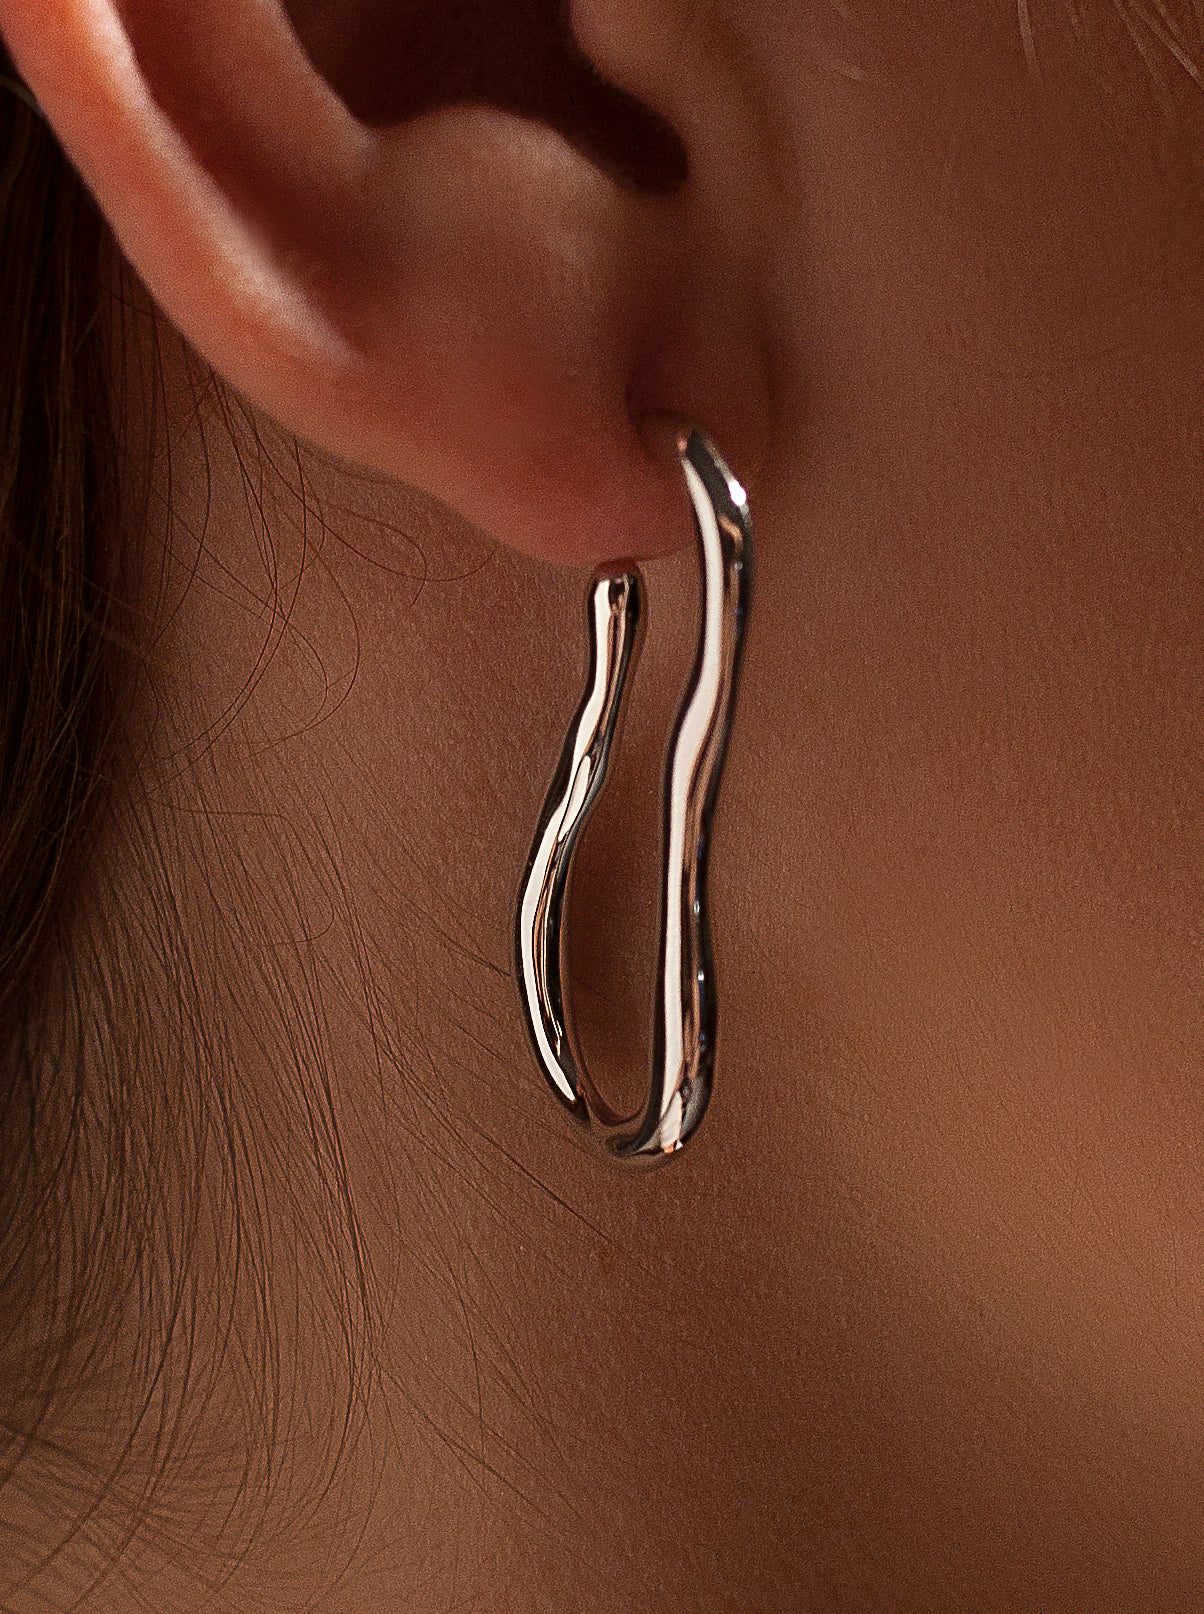 Irregular design silver hoop earrings